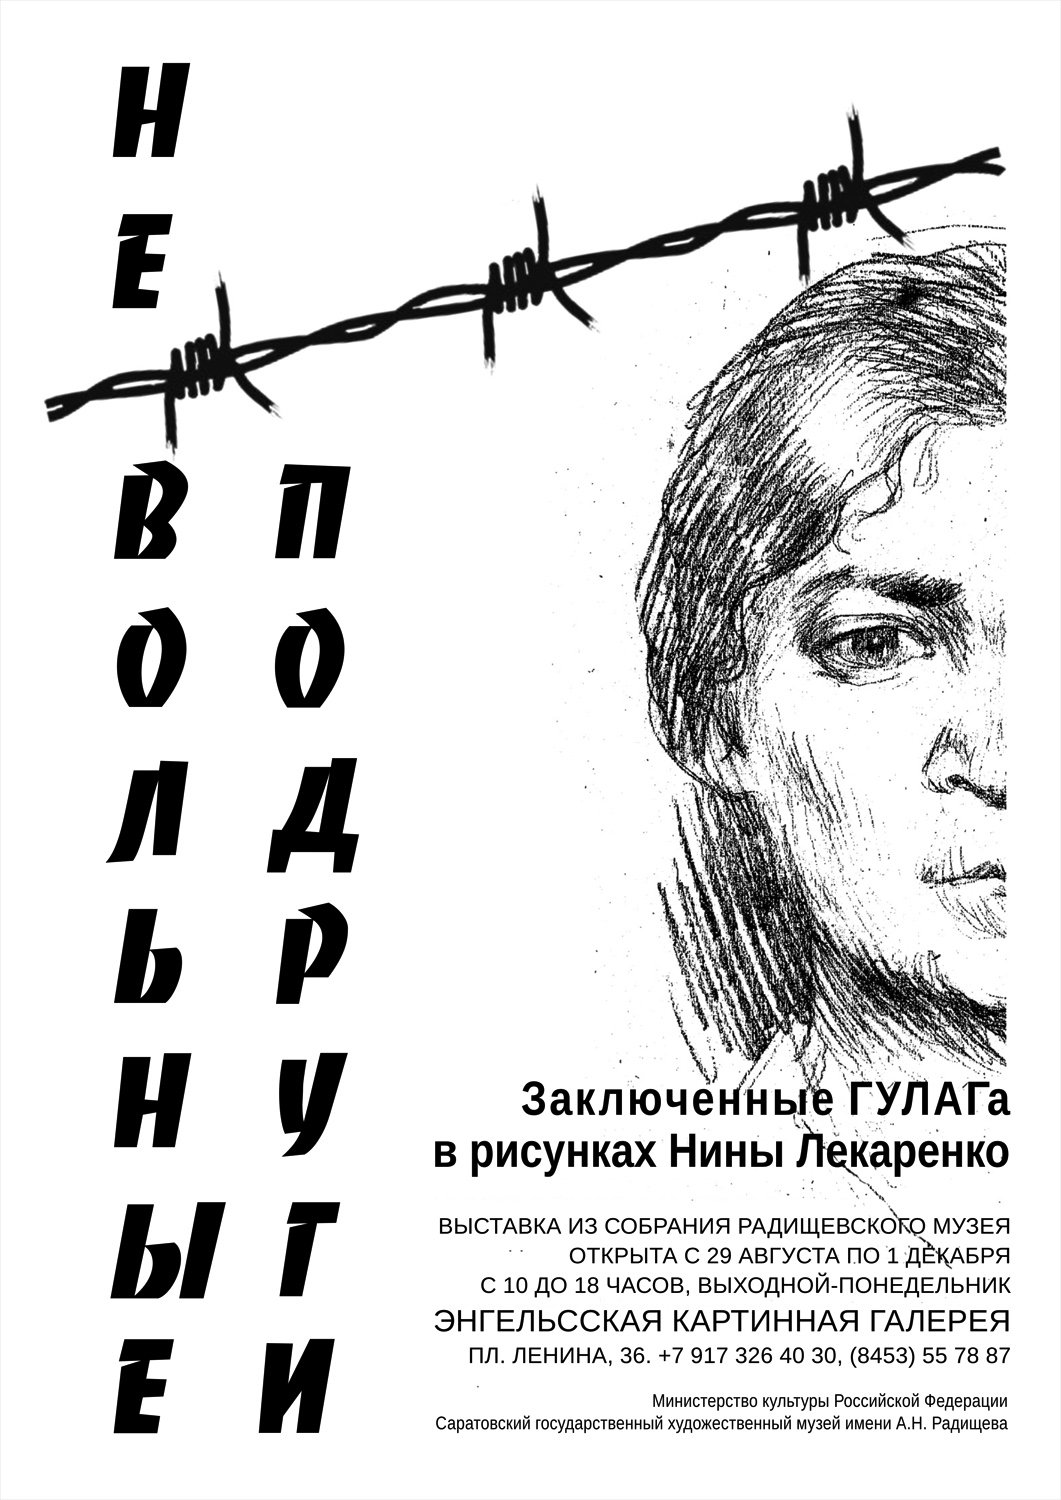 Книги бывших заключенных. ГУЛАГ заключенные фотопортреты. ГУЛАГ рисунки заключенных. Рисунки заключённых ГУЛАГА. Женщины в сталинских лагерях.